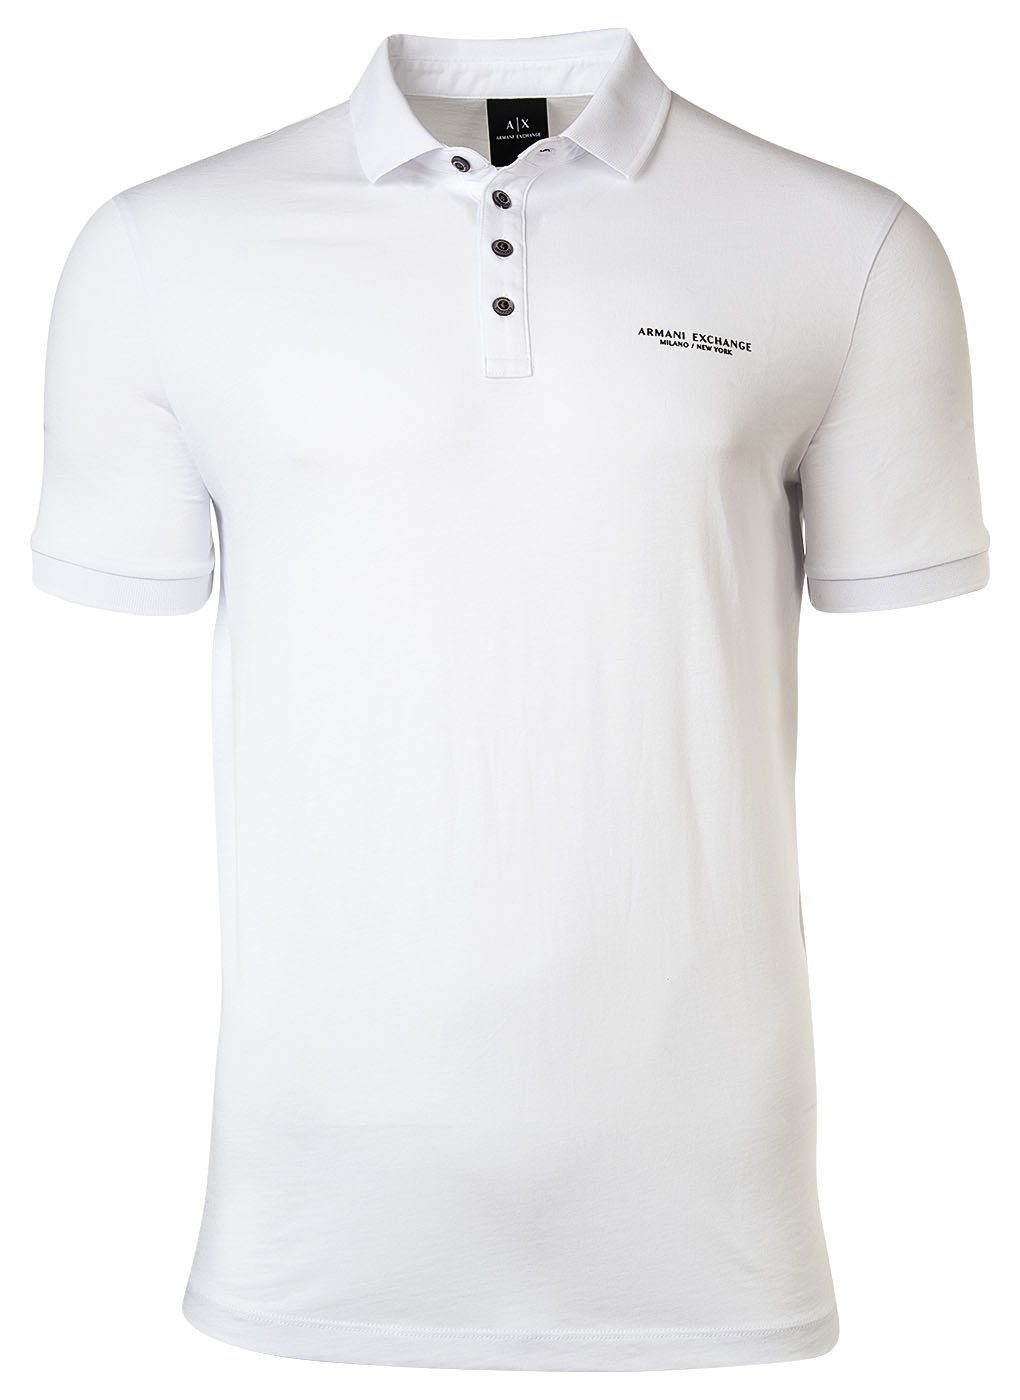 ARMANI EXCHANGE Poloshirt Herren Poloshirt - Schriftzug, Slim fit, Cotton Weiß